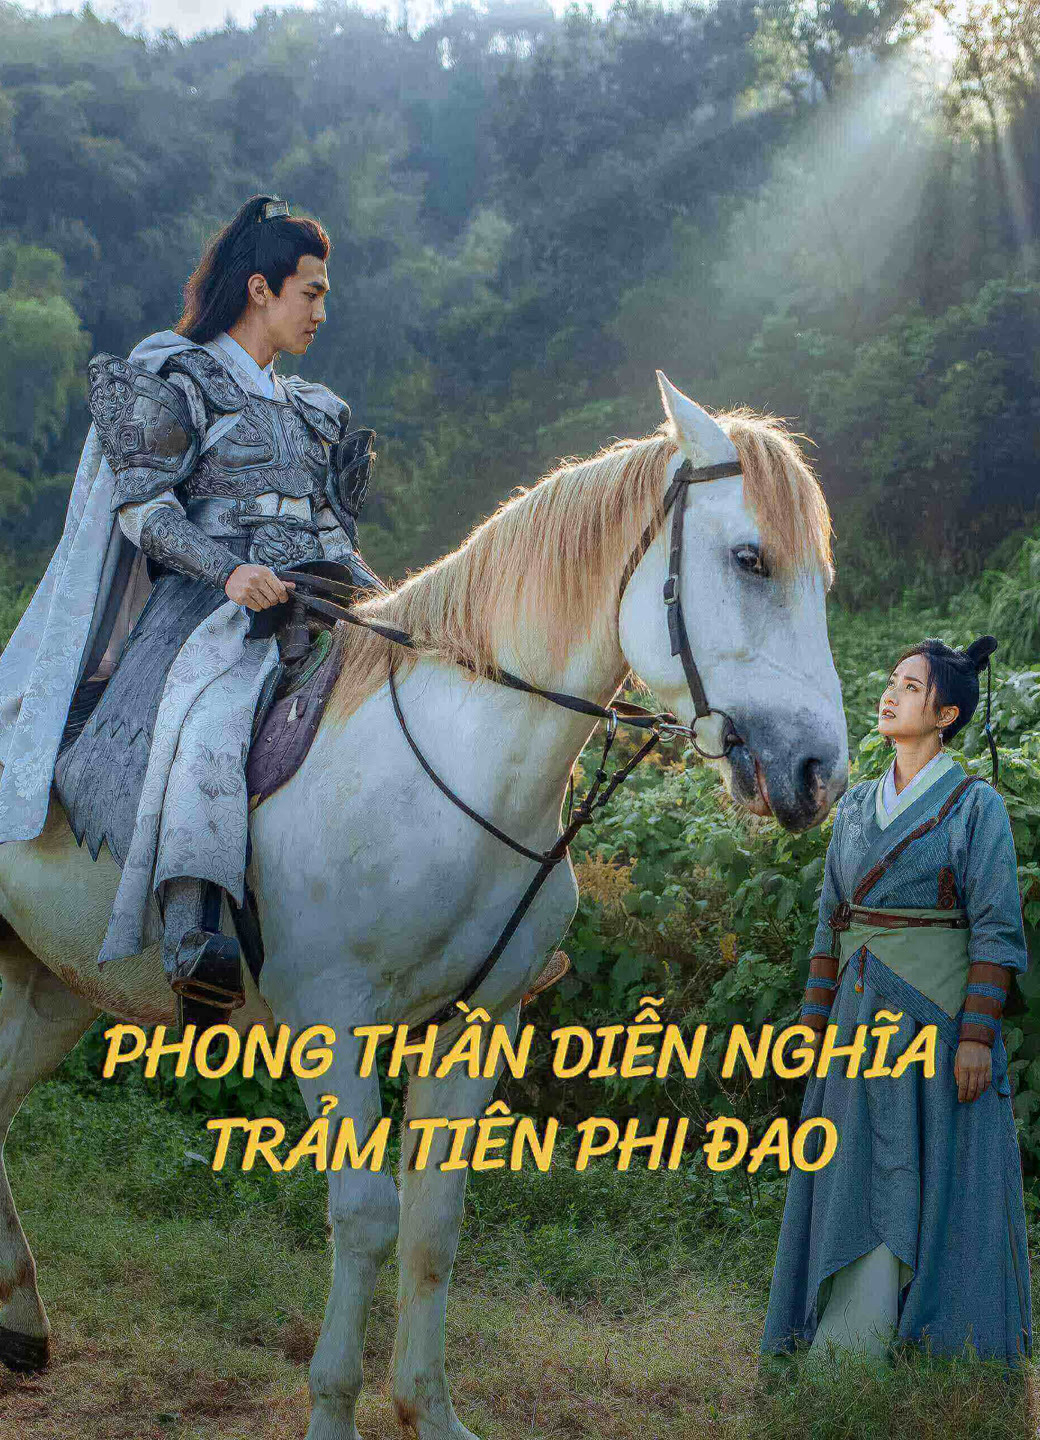 Poster Phim Phong Thần Diễn Nghĩa: Trảm Tiên Phi Đao (The dagger of kill celestial being)